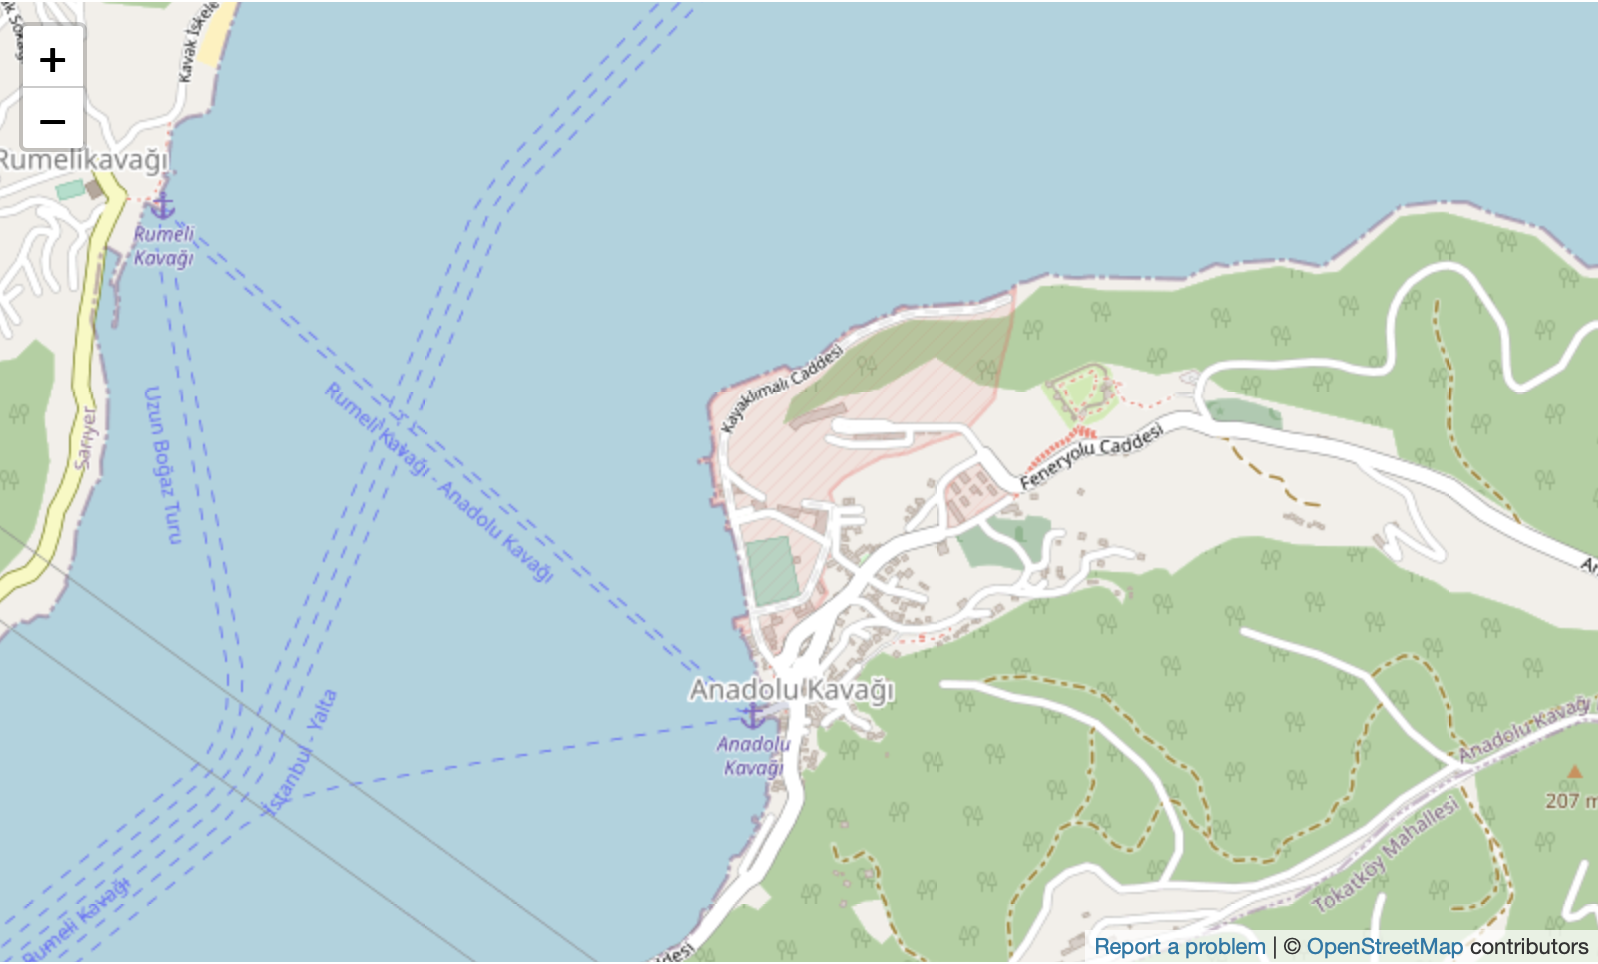 Map of Anadolu Kavagi on Bosphorus Strait